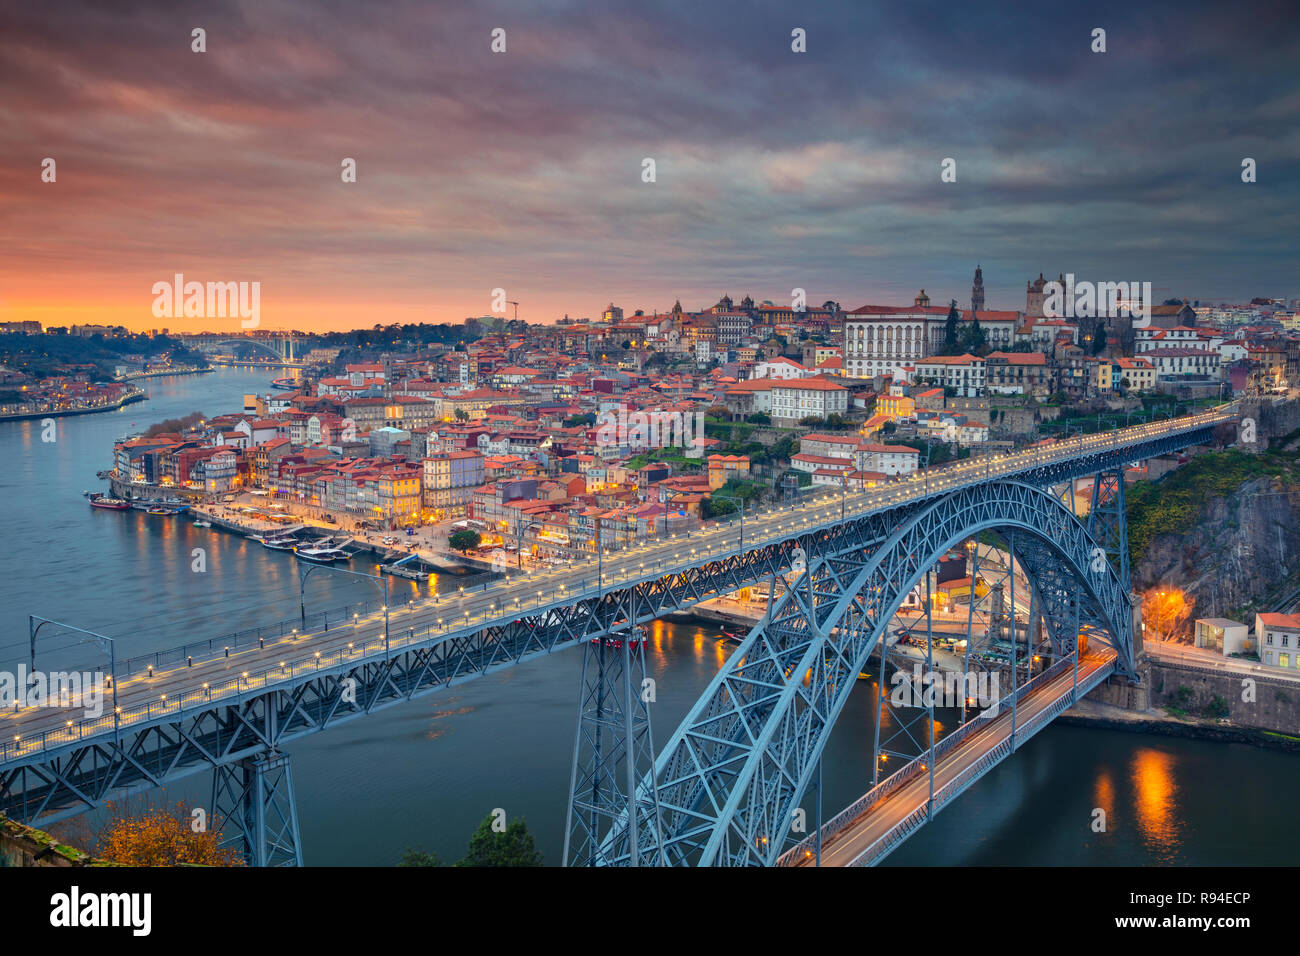 Porto, Portogallo. Aerial cityscape immagine del Porto, Portogallo con il famoso Luis I Bridge e il fiume Douro durante il tramonto spettacolare. Foto Stock